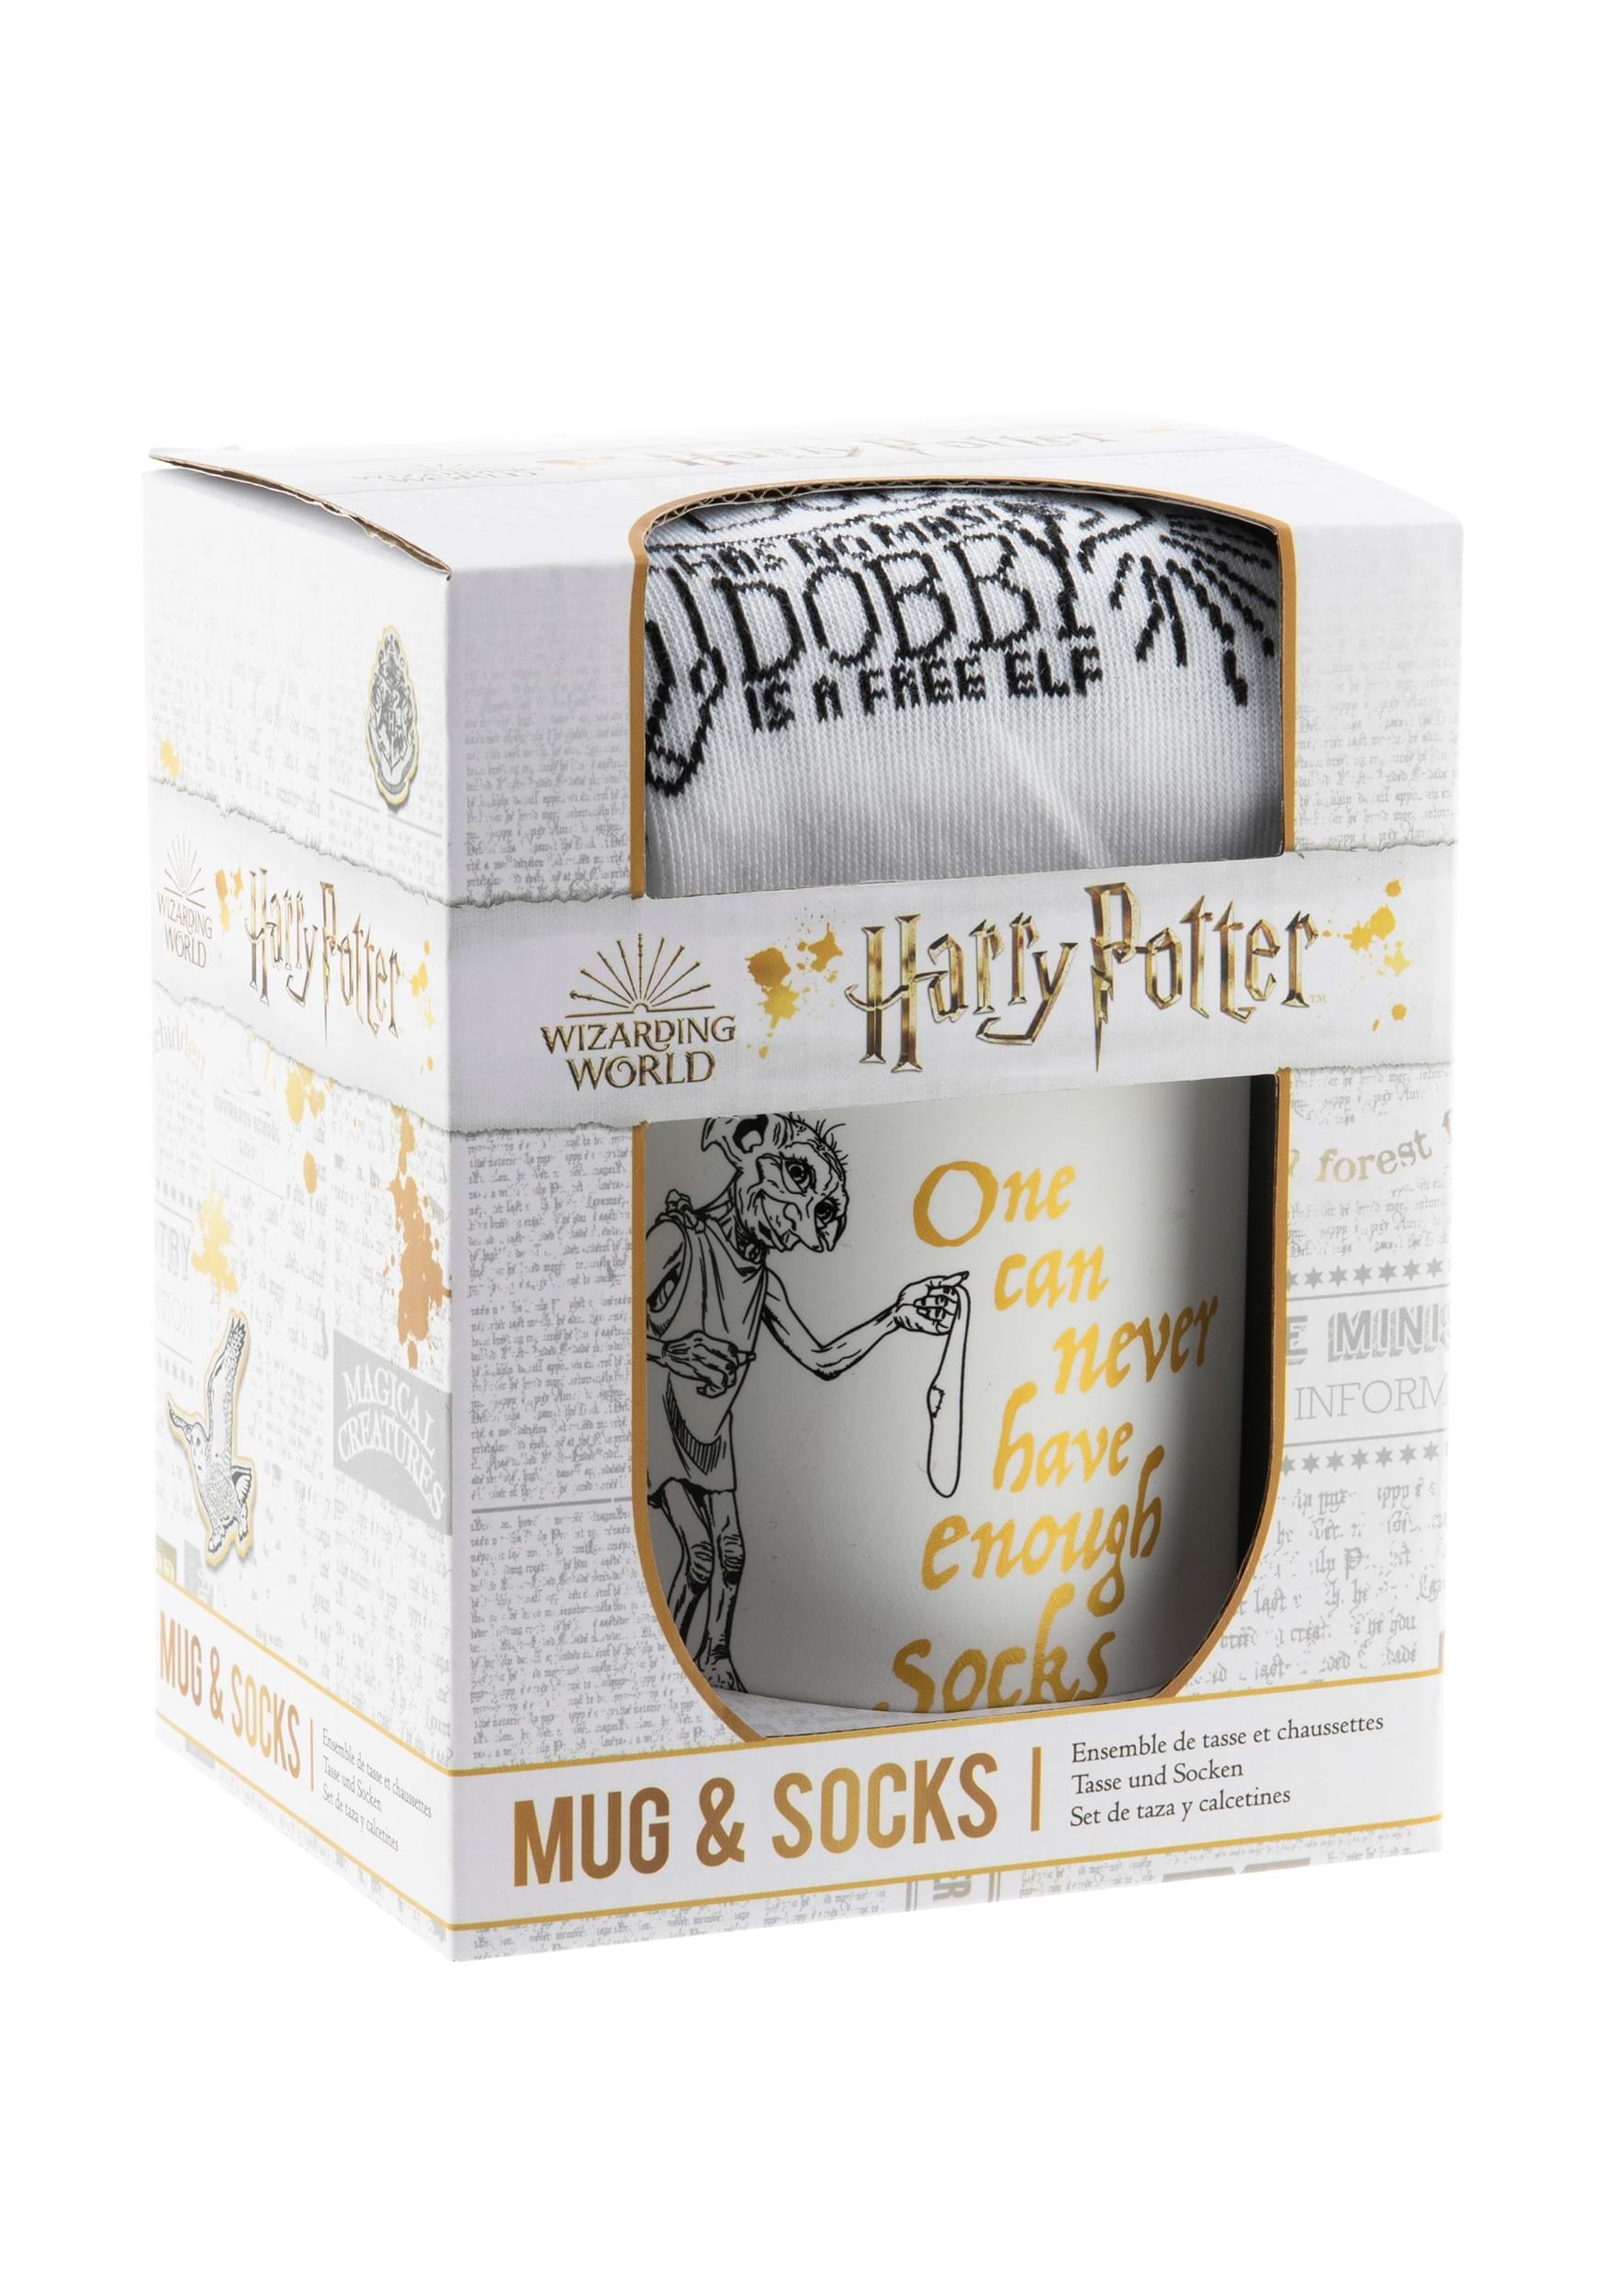 Dobby Socks & Mug Set